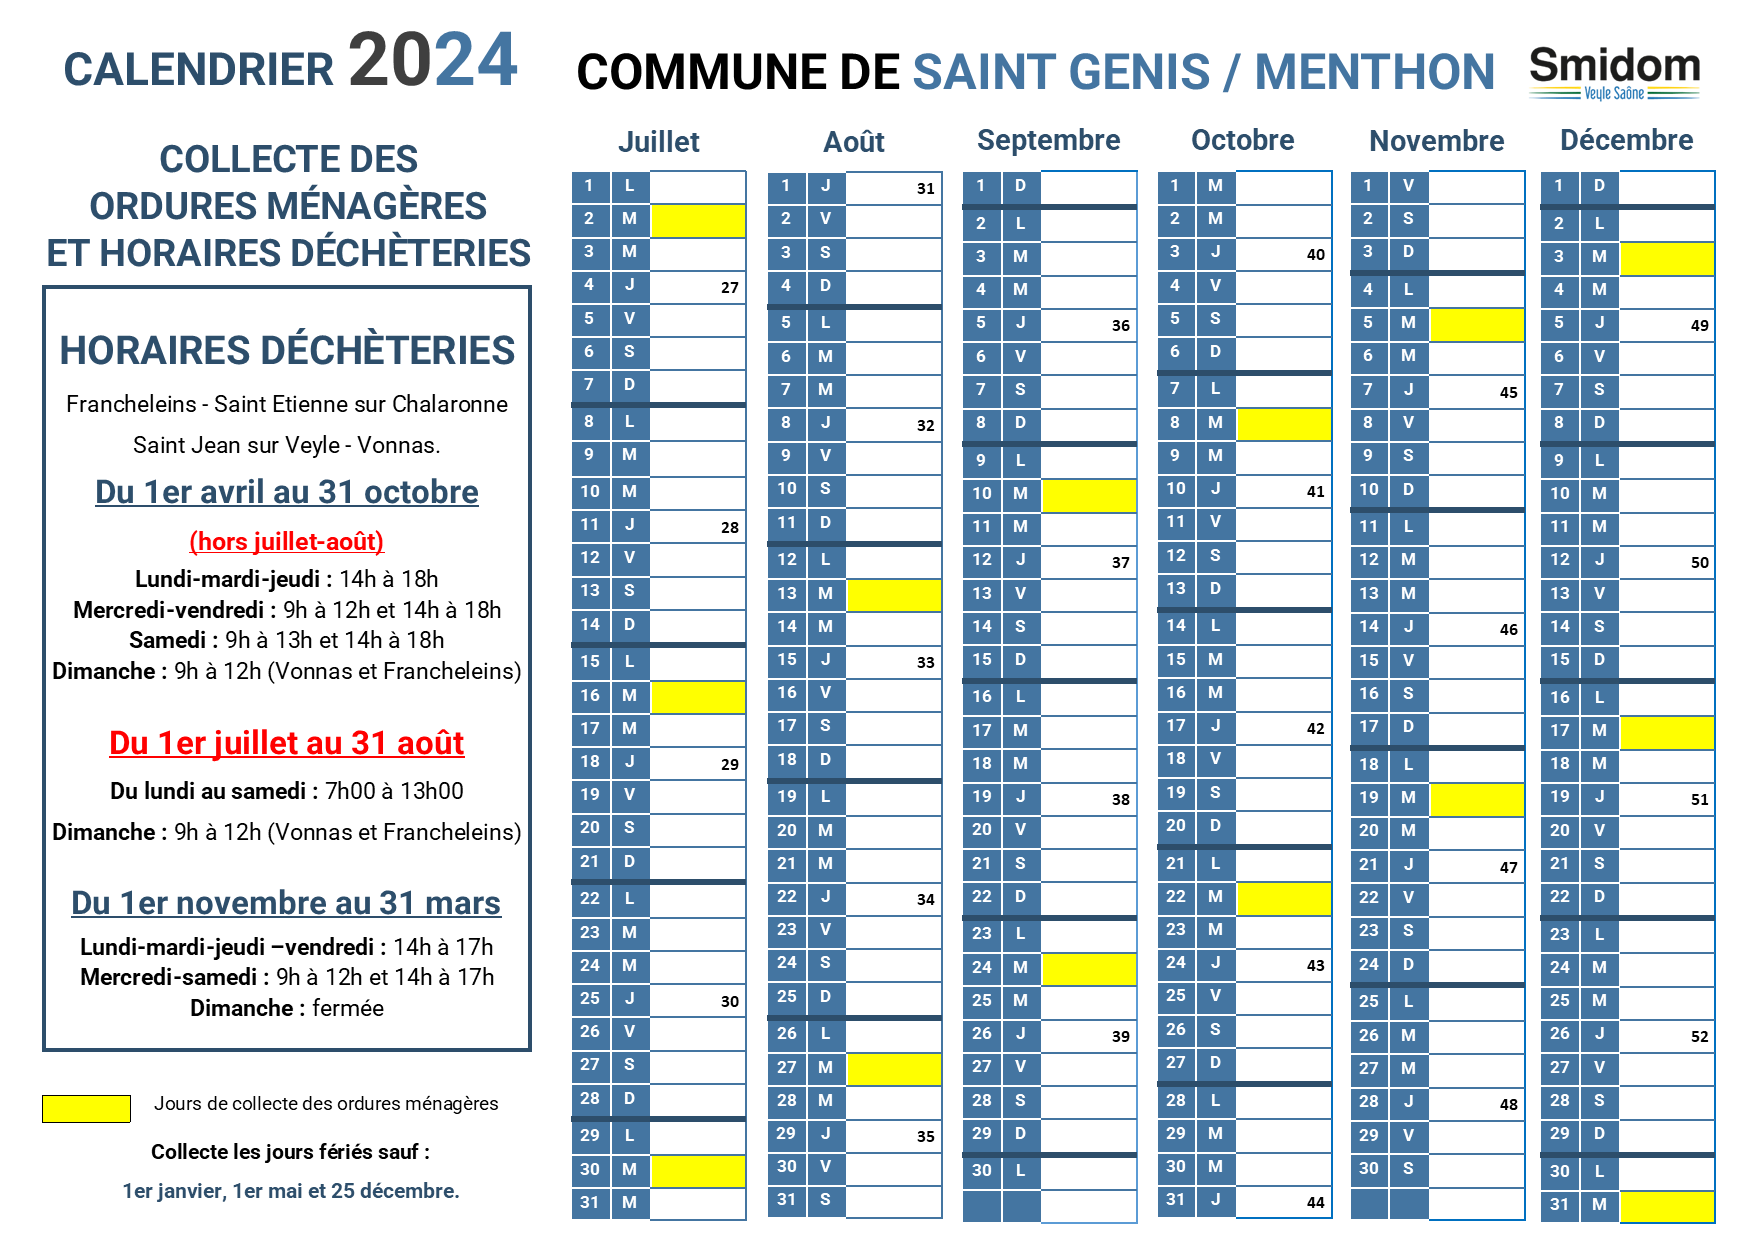 SAINT GENIS SUR MENTHON - Calendrier 2024 - 2.png